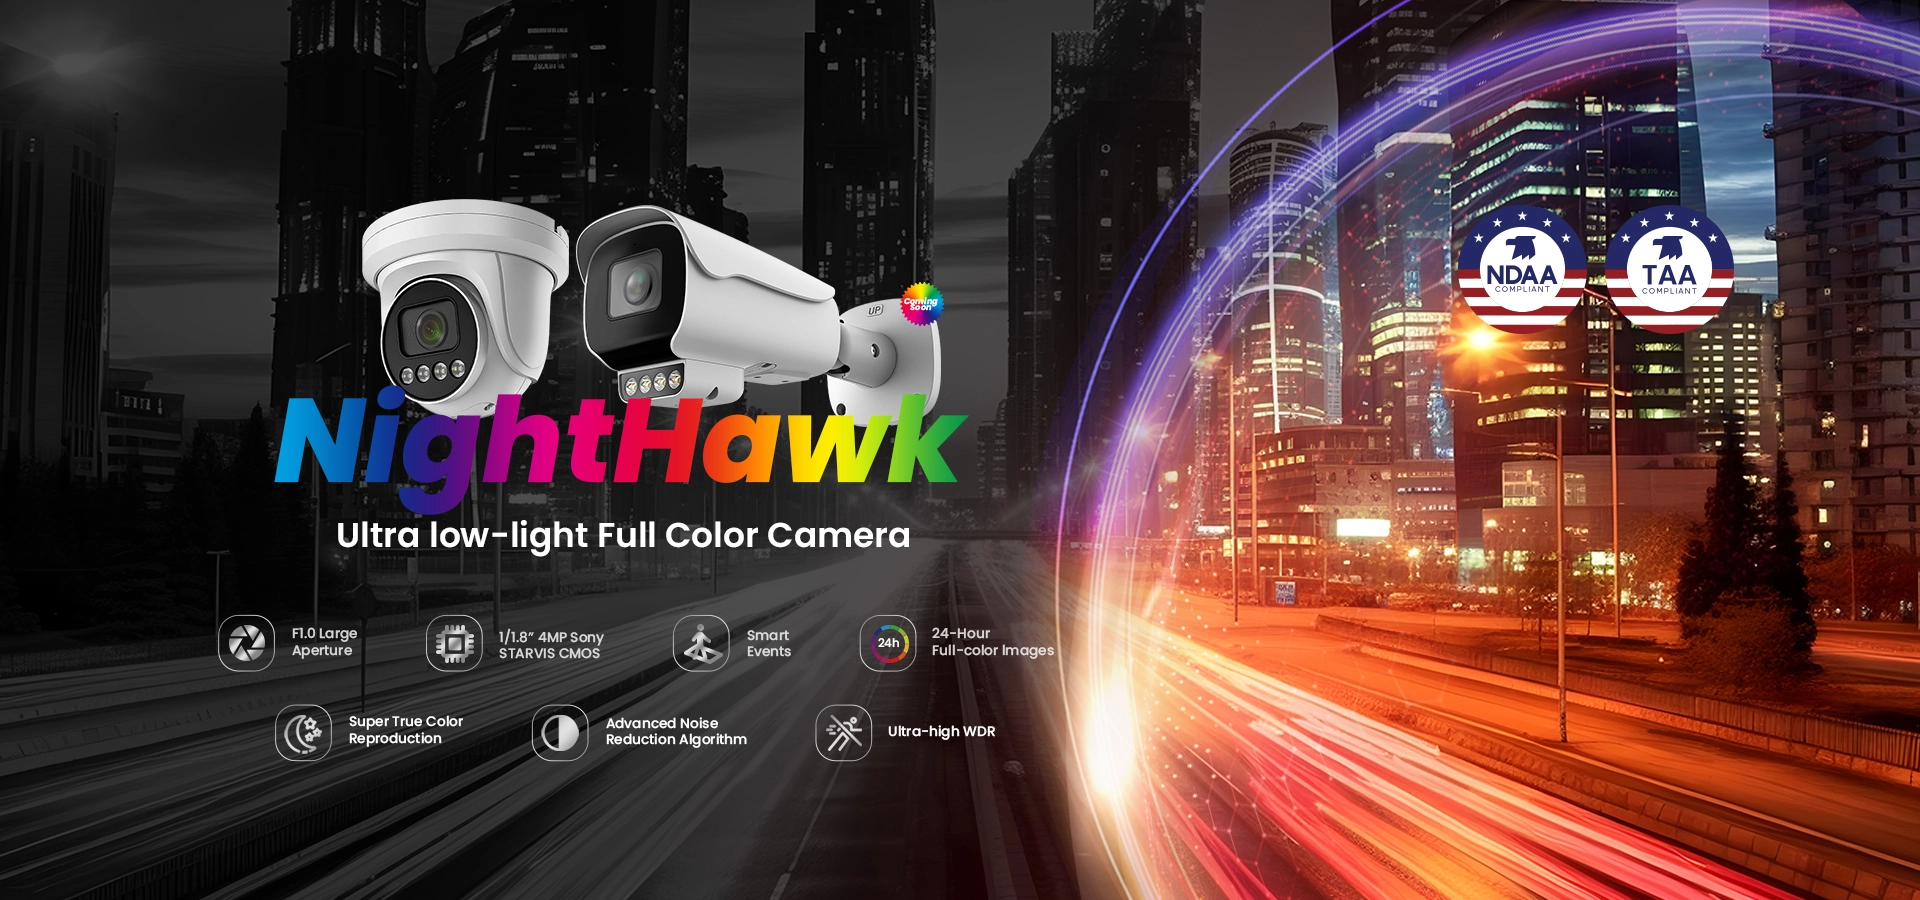 Sunell Nighthawk超低照度インテリジェントフルカラーバレットカメラ--超低照度環境でクリスタルクリアな画像をキャプチャします。これらはすべて、補助的な照明を必要とせずに最小限のモーションブラーを備えています。